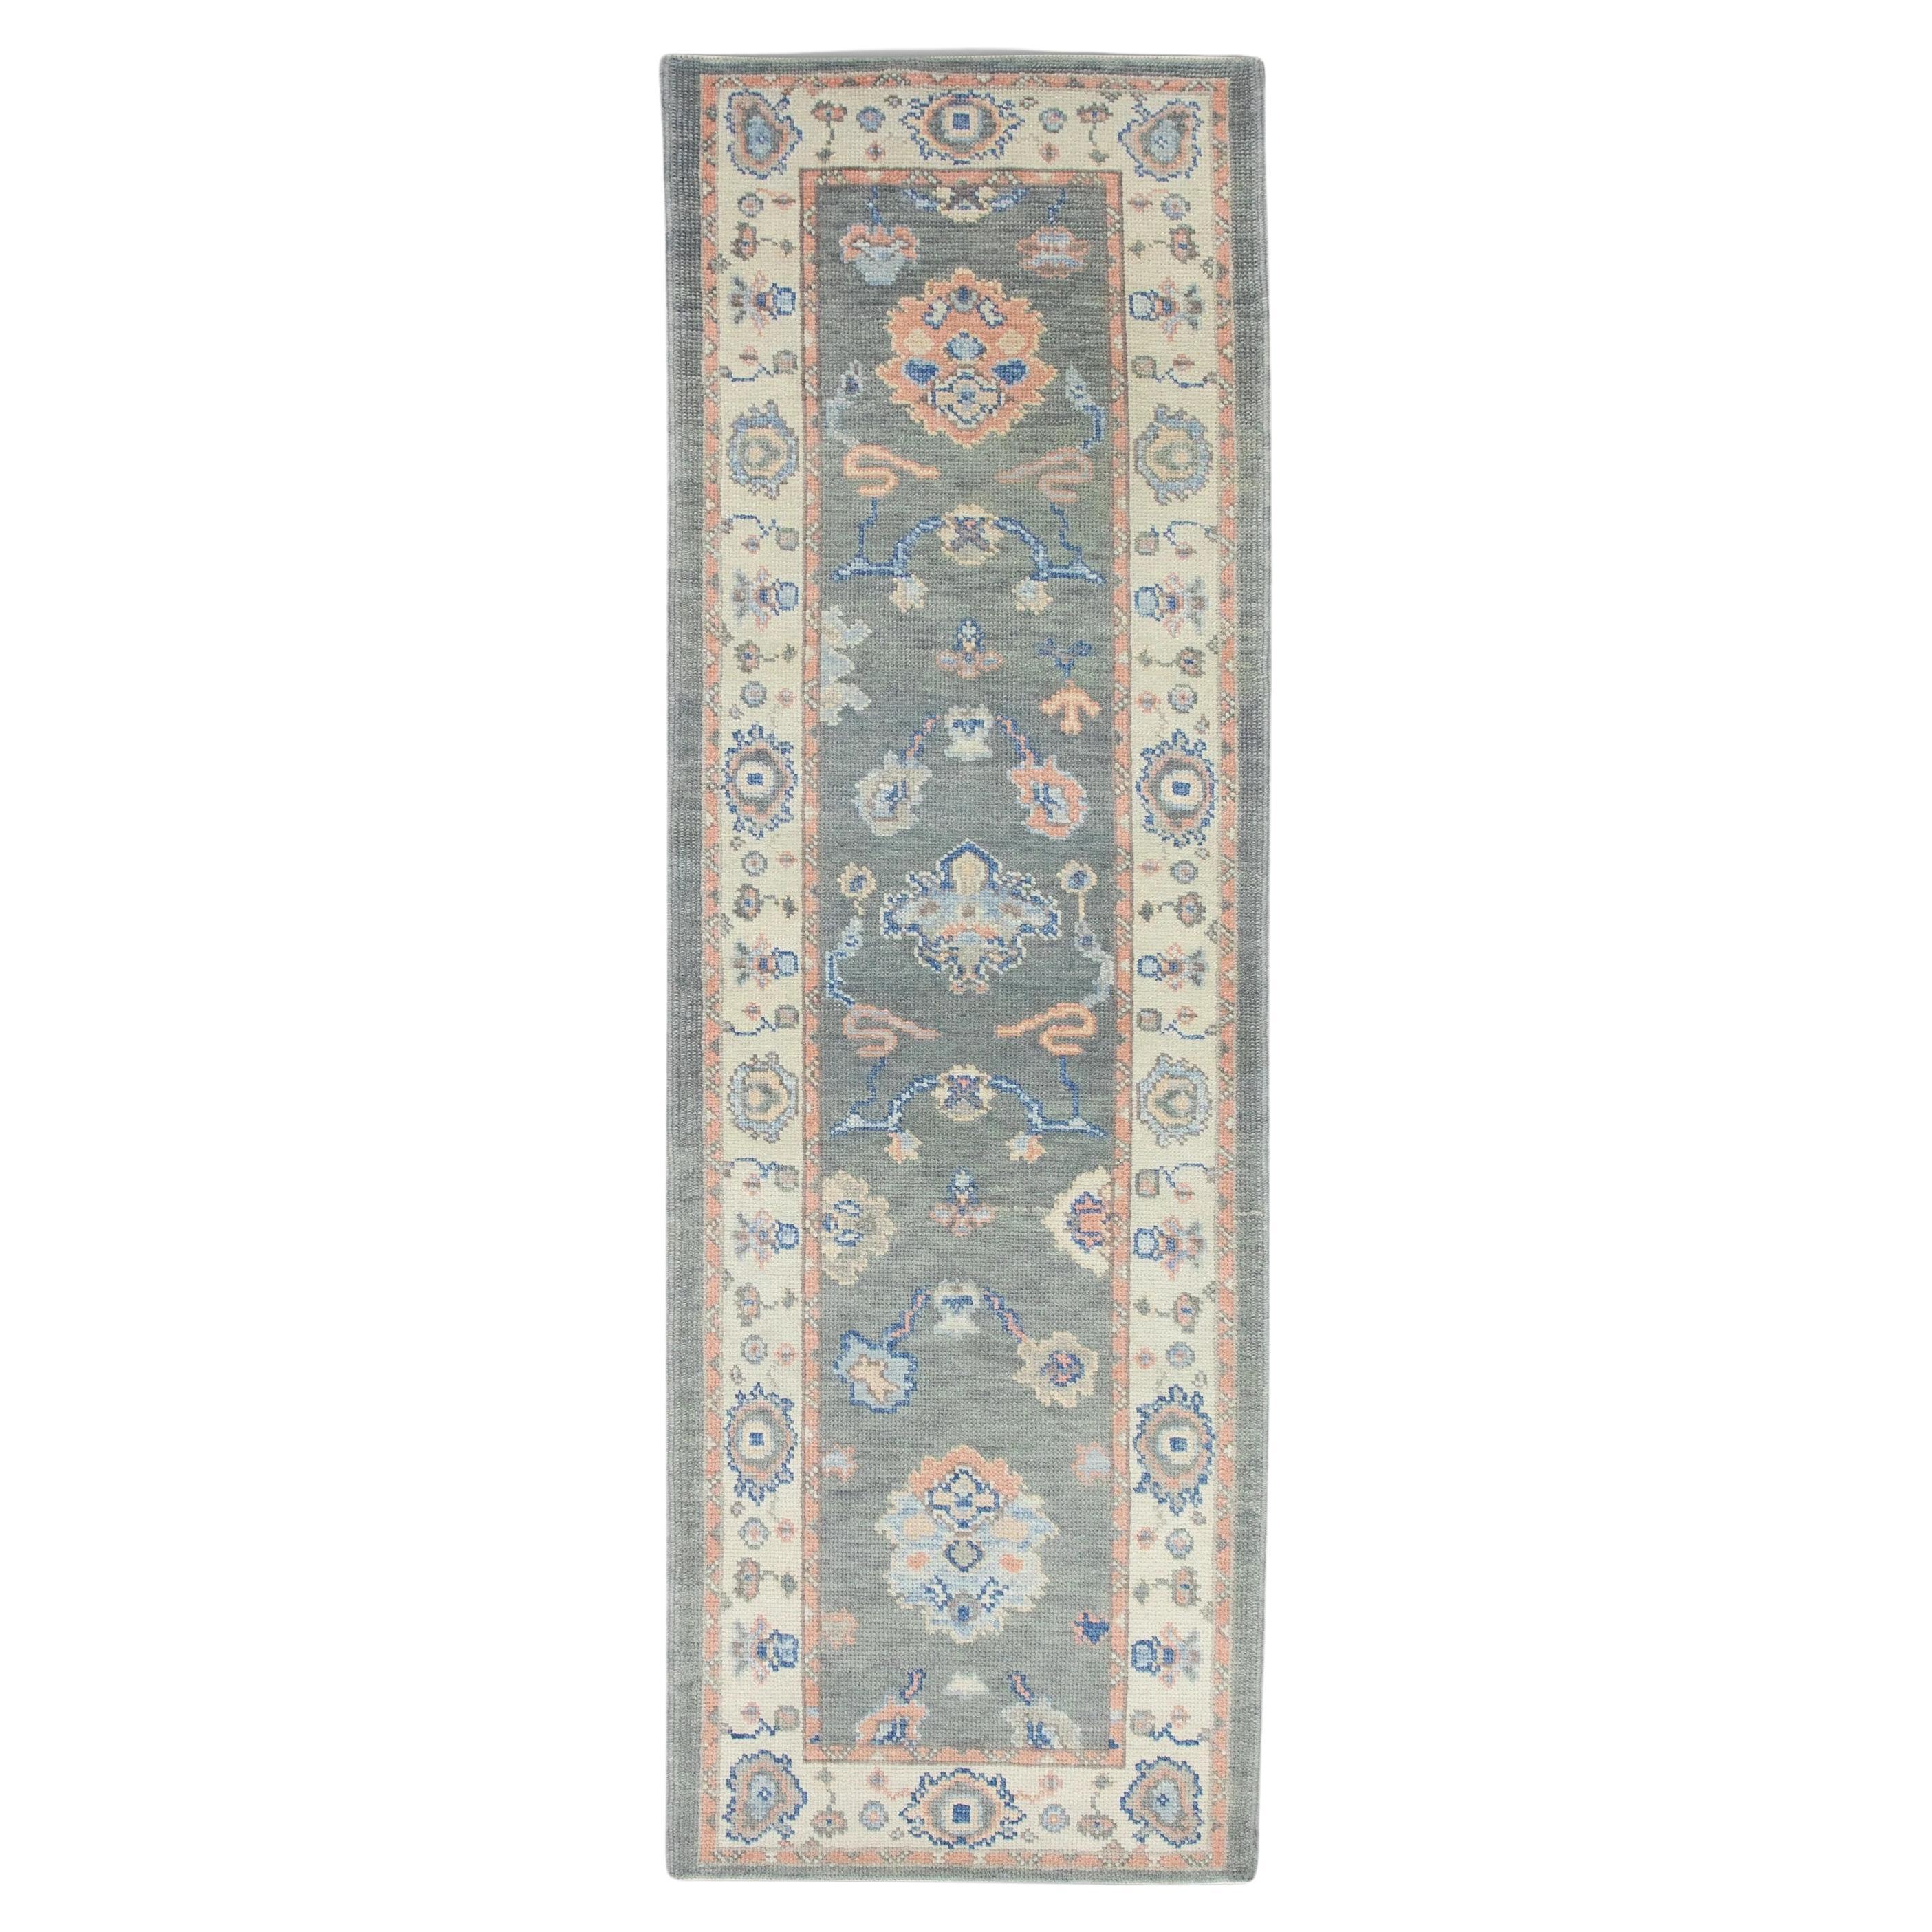 Tapis turc Oushak en laine grise tissée à la main à motifs floraux roses et bleus 2'7" x 7'11".